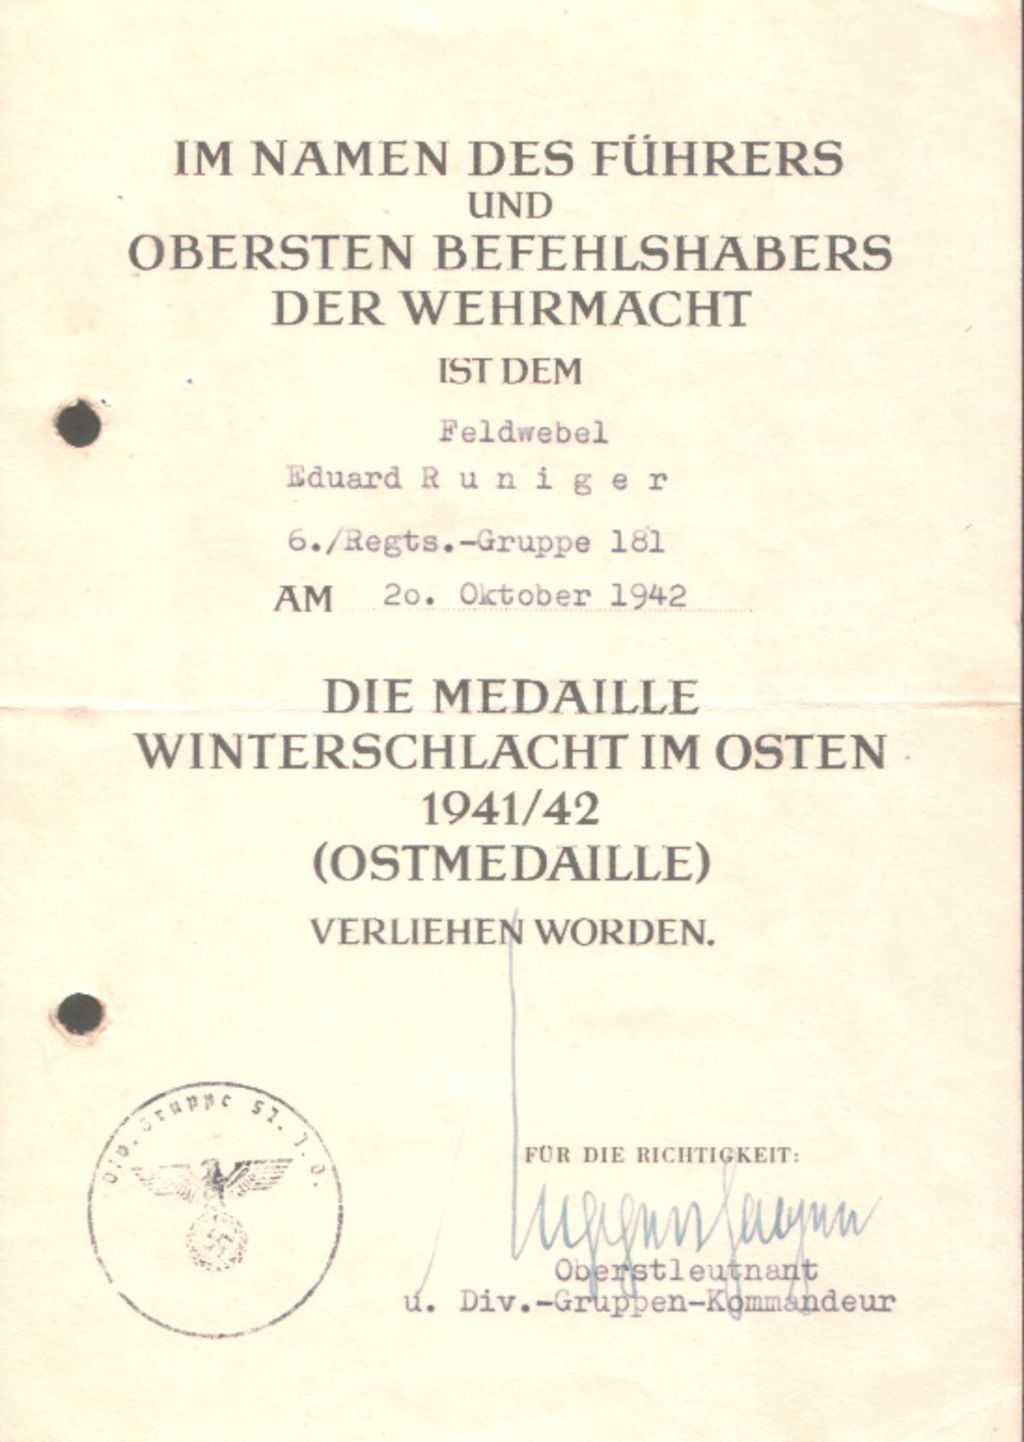 Exponat: Dokument: Urkunde zur Medaille Winterschlacht im Osten, 1942